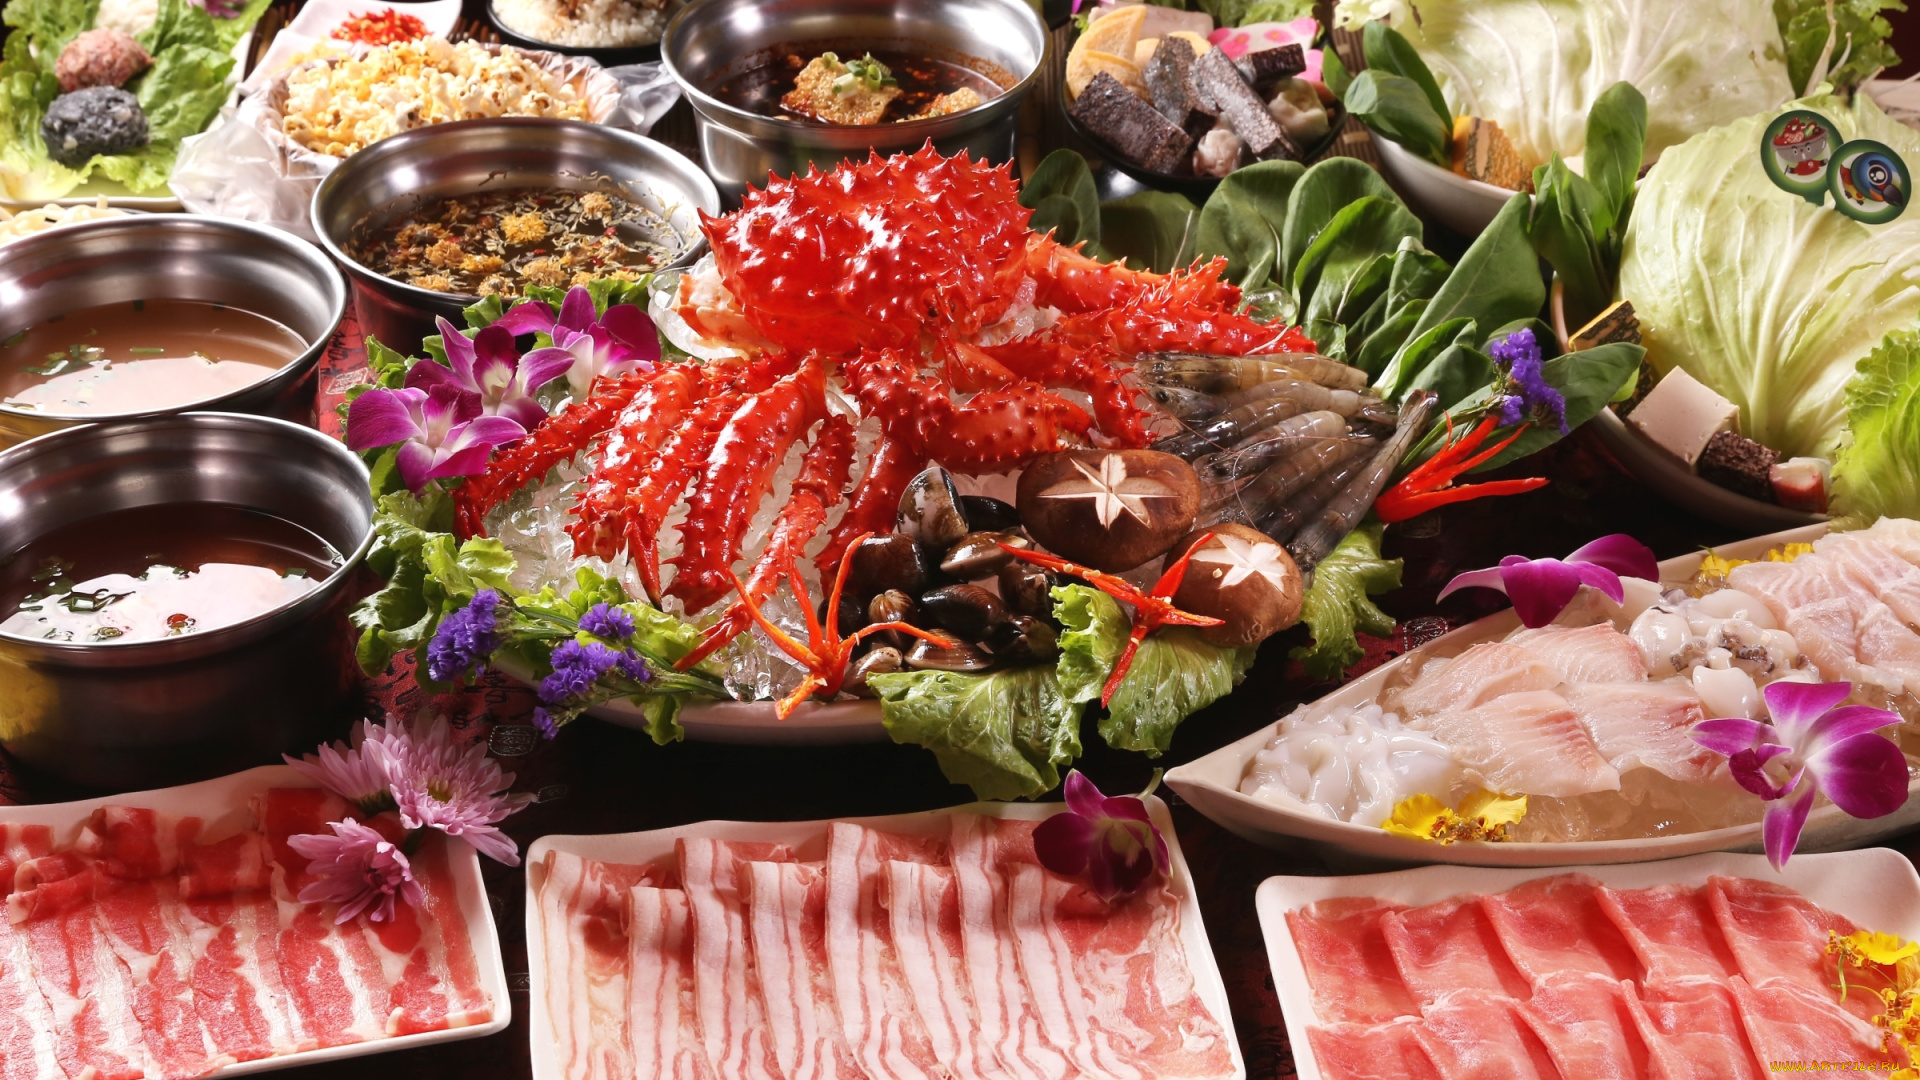 еда, разное, ассорти, суп, грибы, бекон, морепродукты, блюда, креветки, краб, салат, цветы, японская, кухня